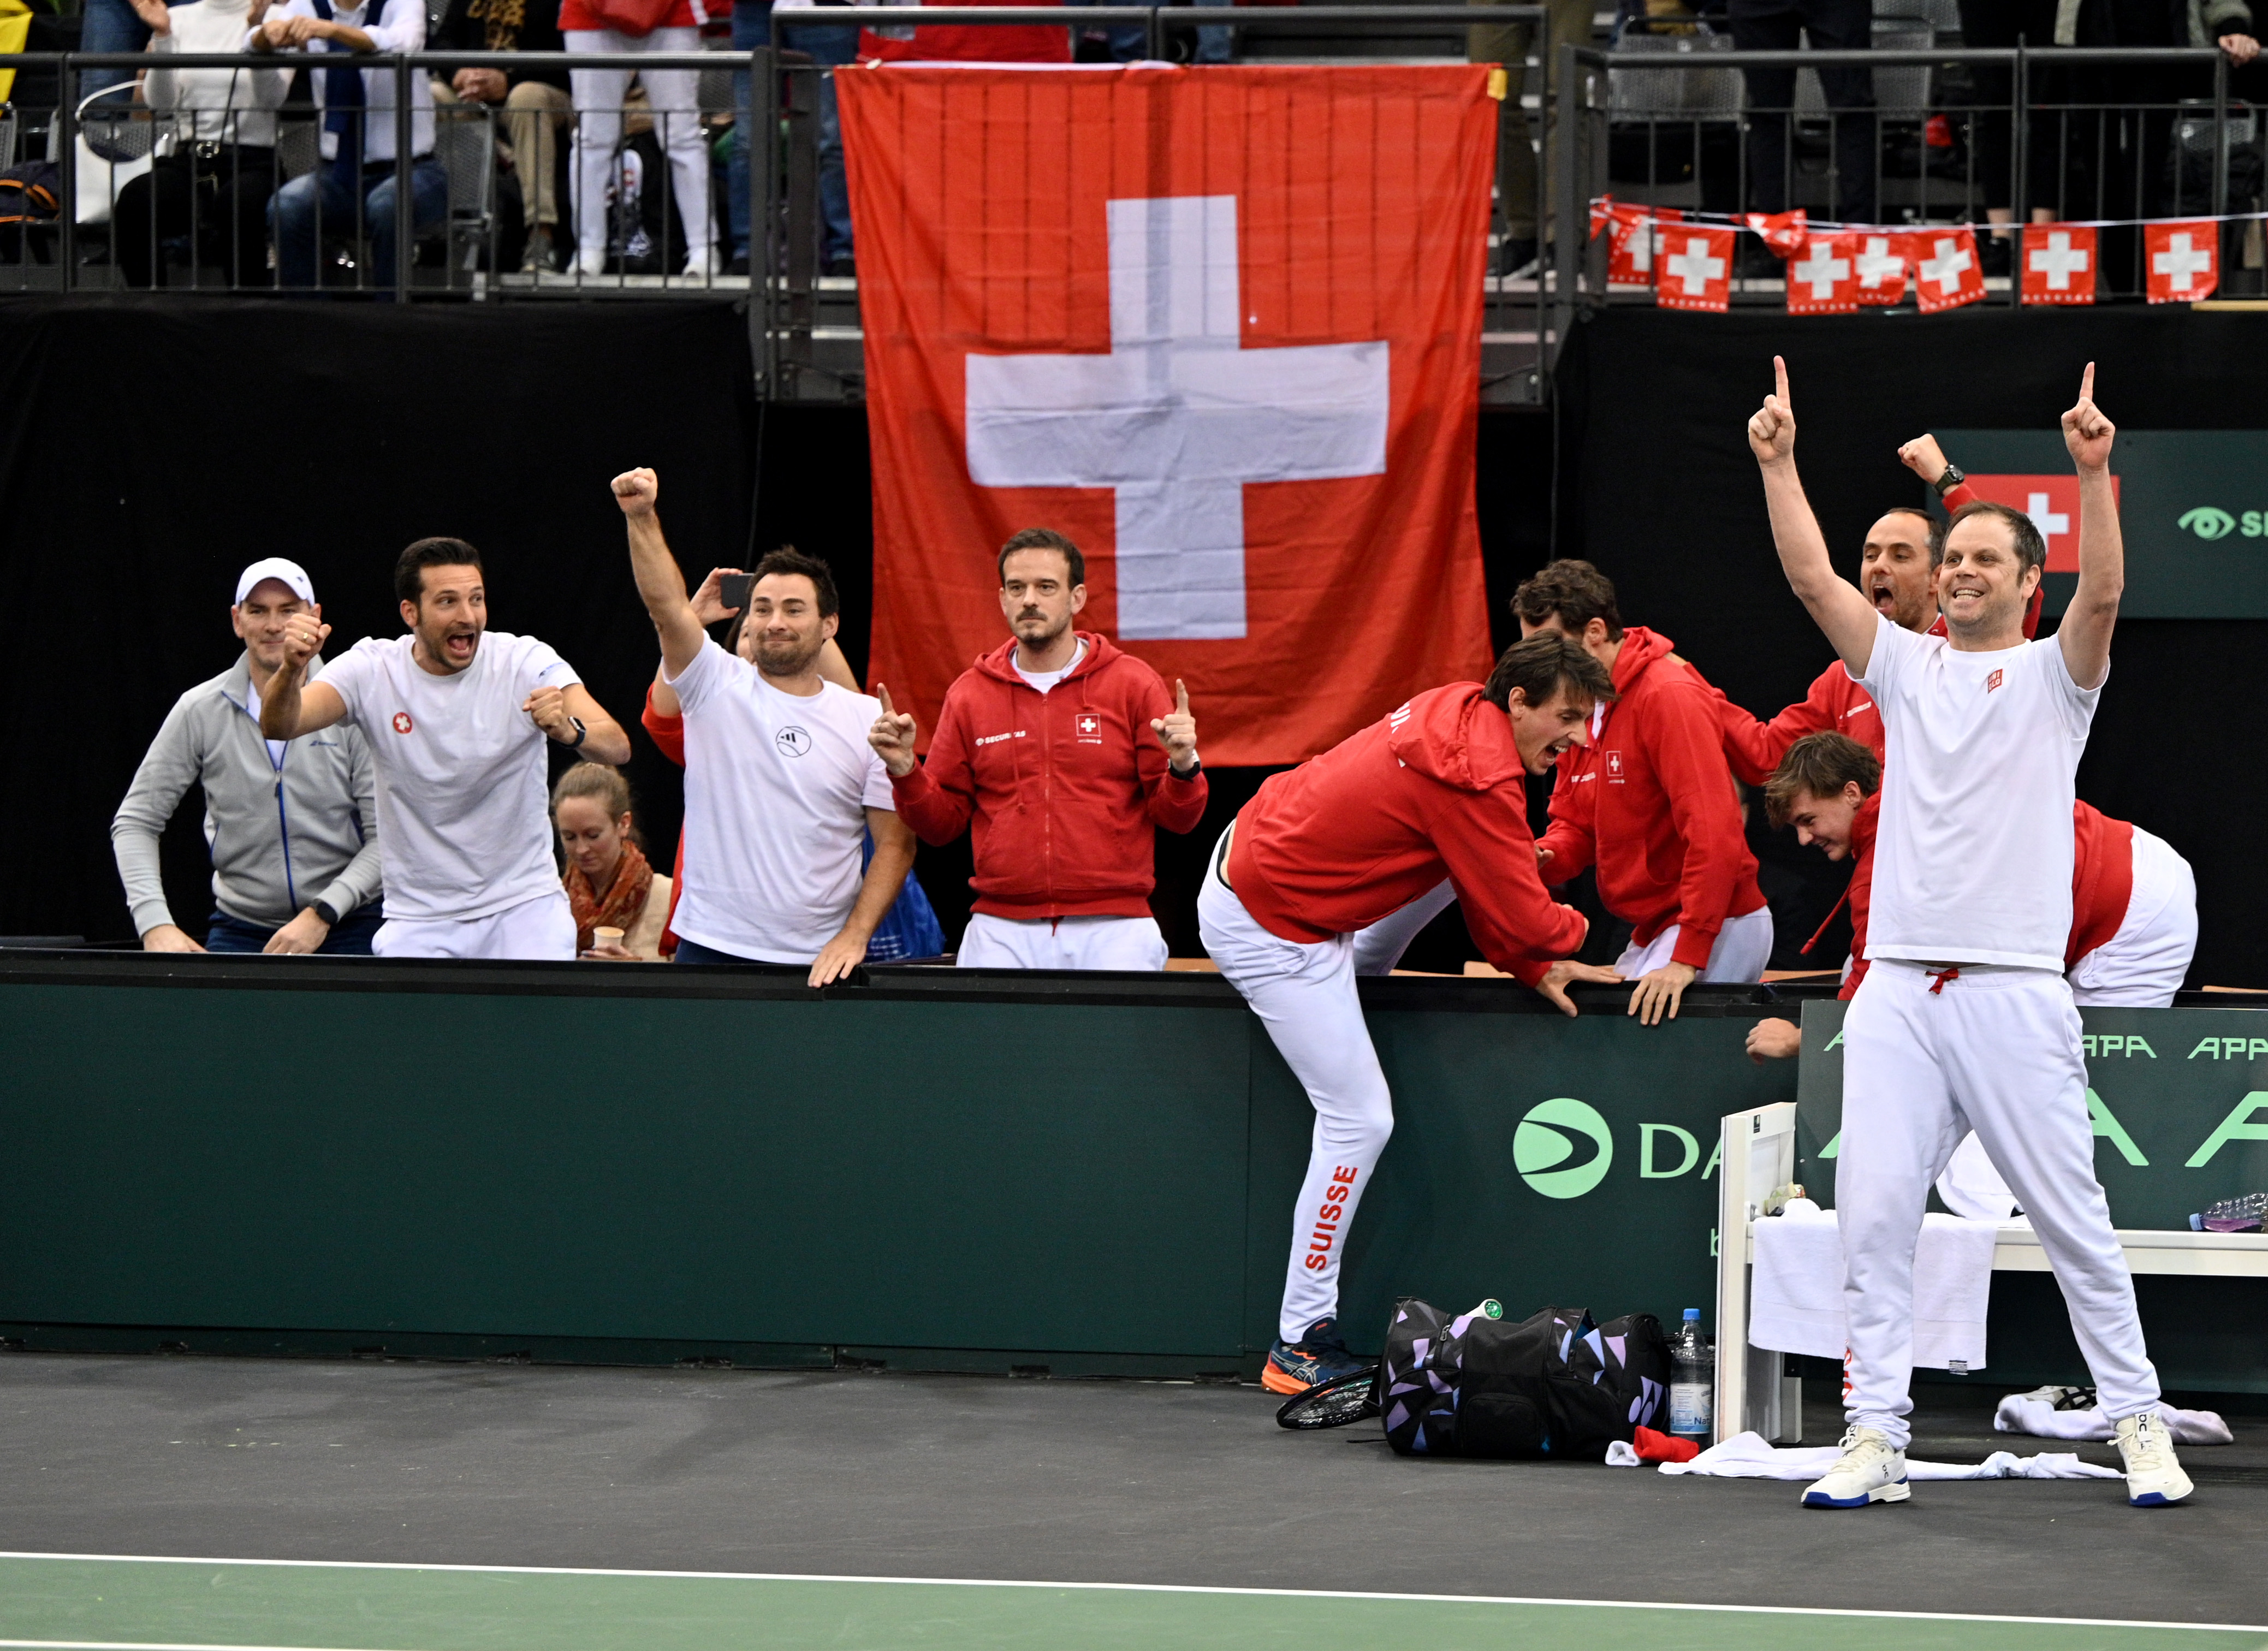 Davis Cup - Zverev und Altmaier verlieren - Deutschland scheidet gegen die Schweiz aus